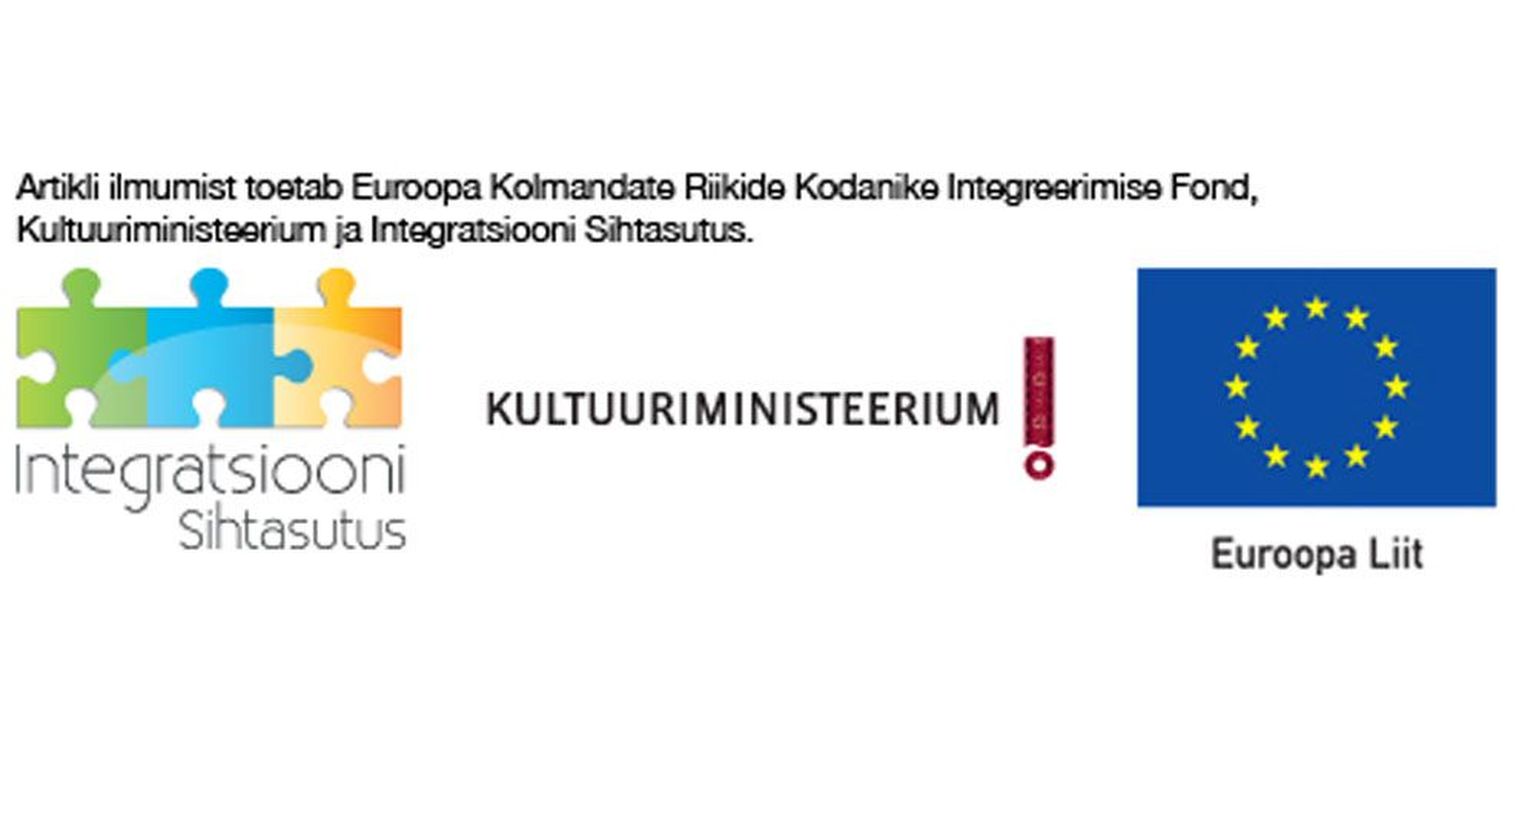 Loo ilmumist toetab Euroopa Kolmandate Riikide Kodanike Integ­ree­rimise Fond, kultuuriministeerium ja Integratsiooni Sihtasutus